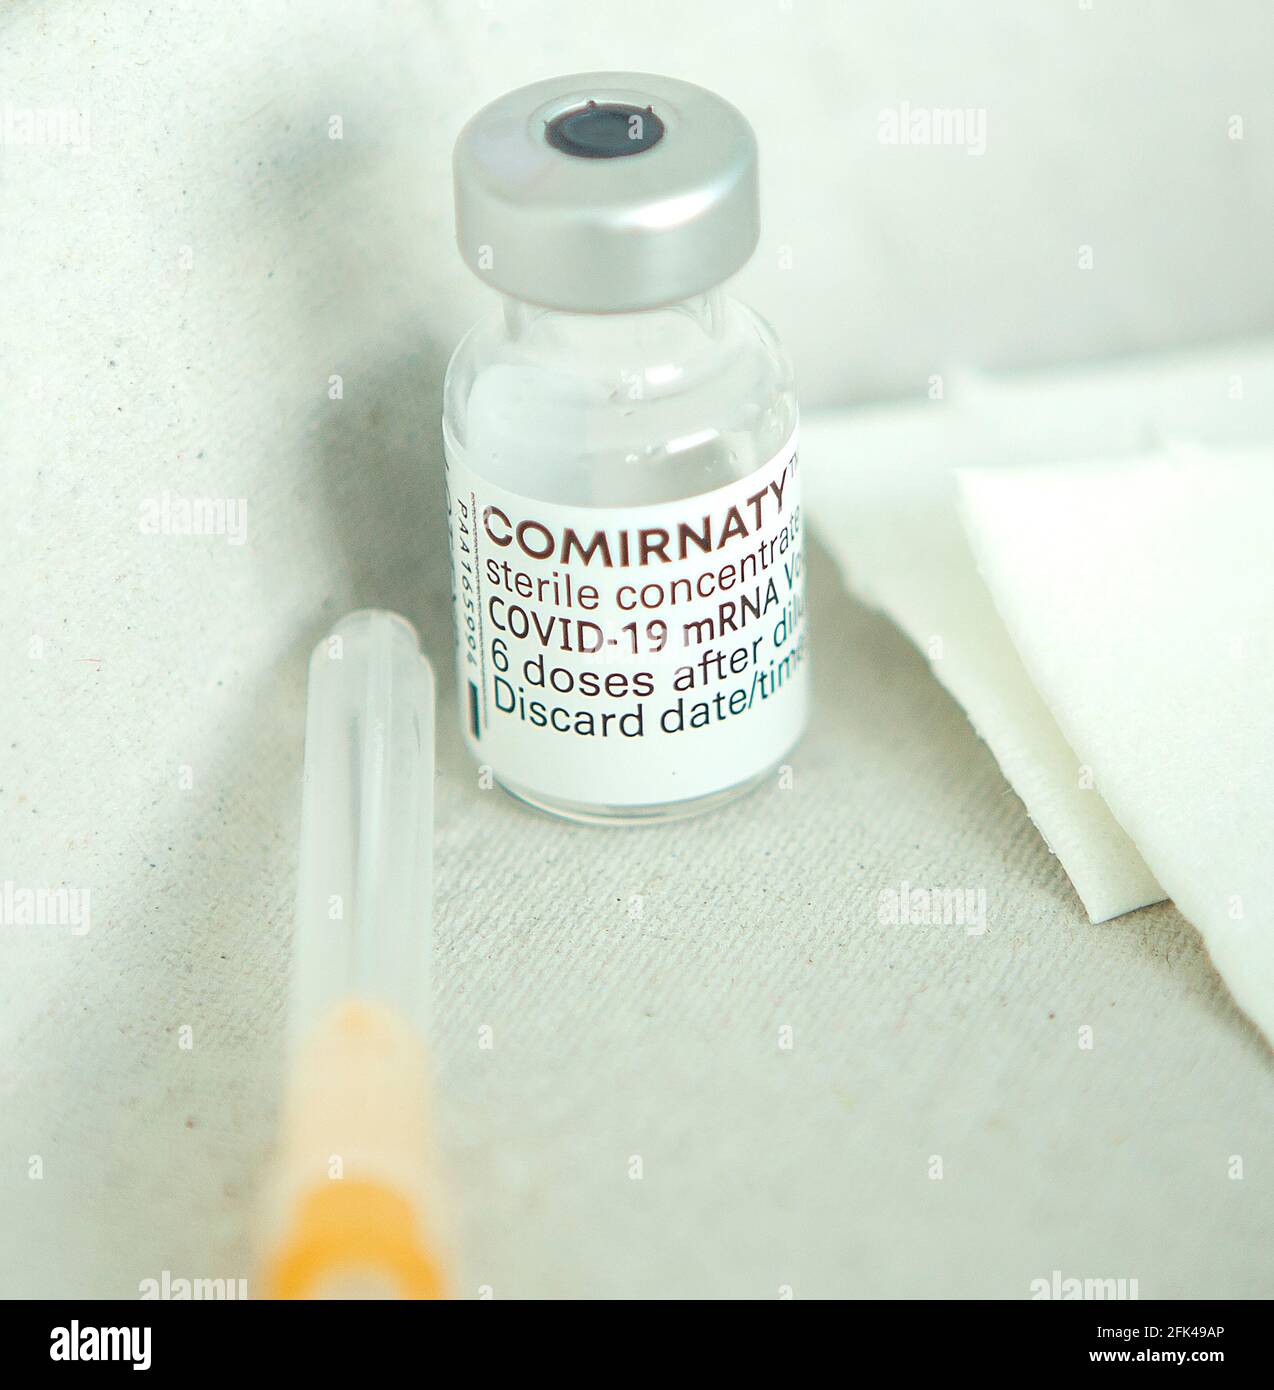 Impfung gegen Covid 19 / Corona mit dem Impfstoff von Biontech / Pfizer bei der Hausarztpraxis Dr. Ruf in Düsseldorf Foto Stock